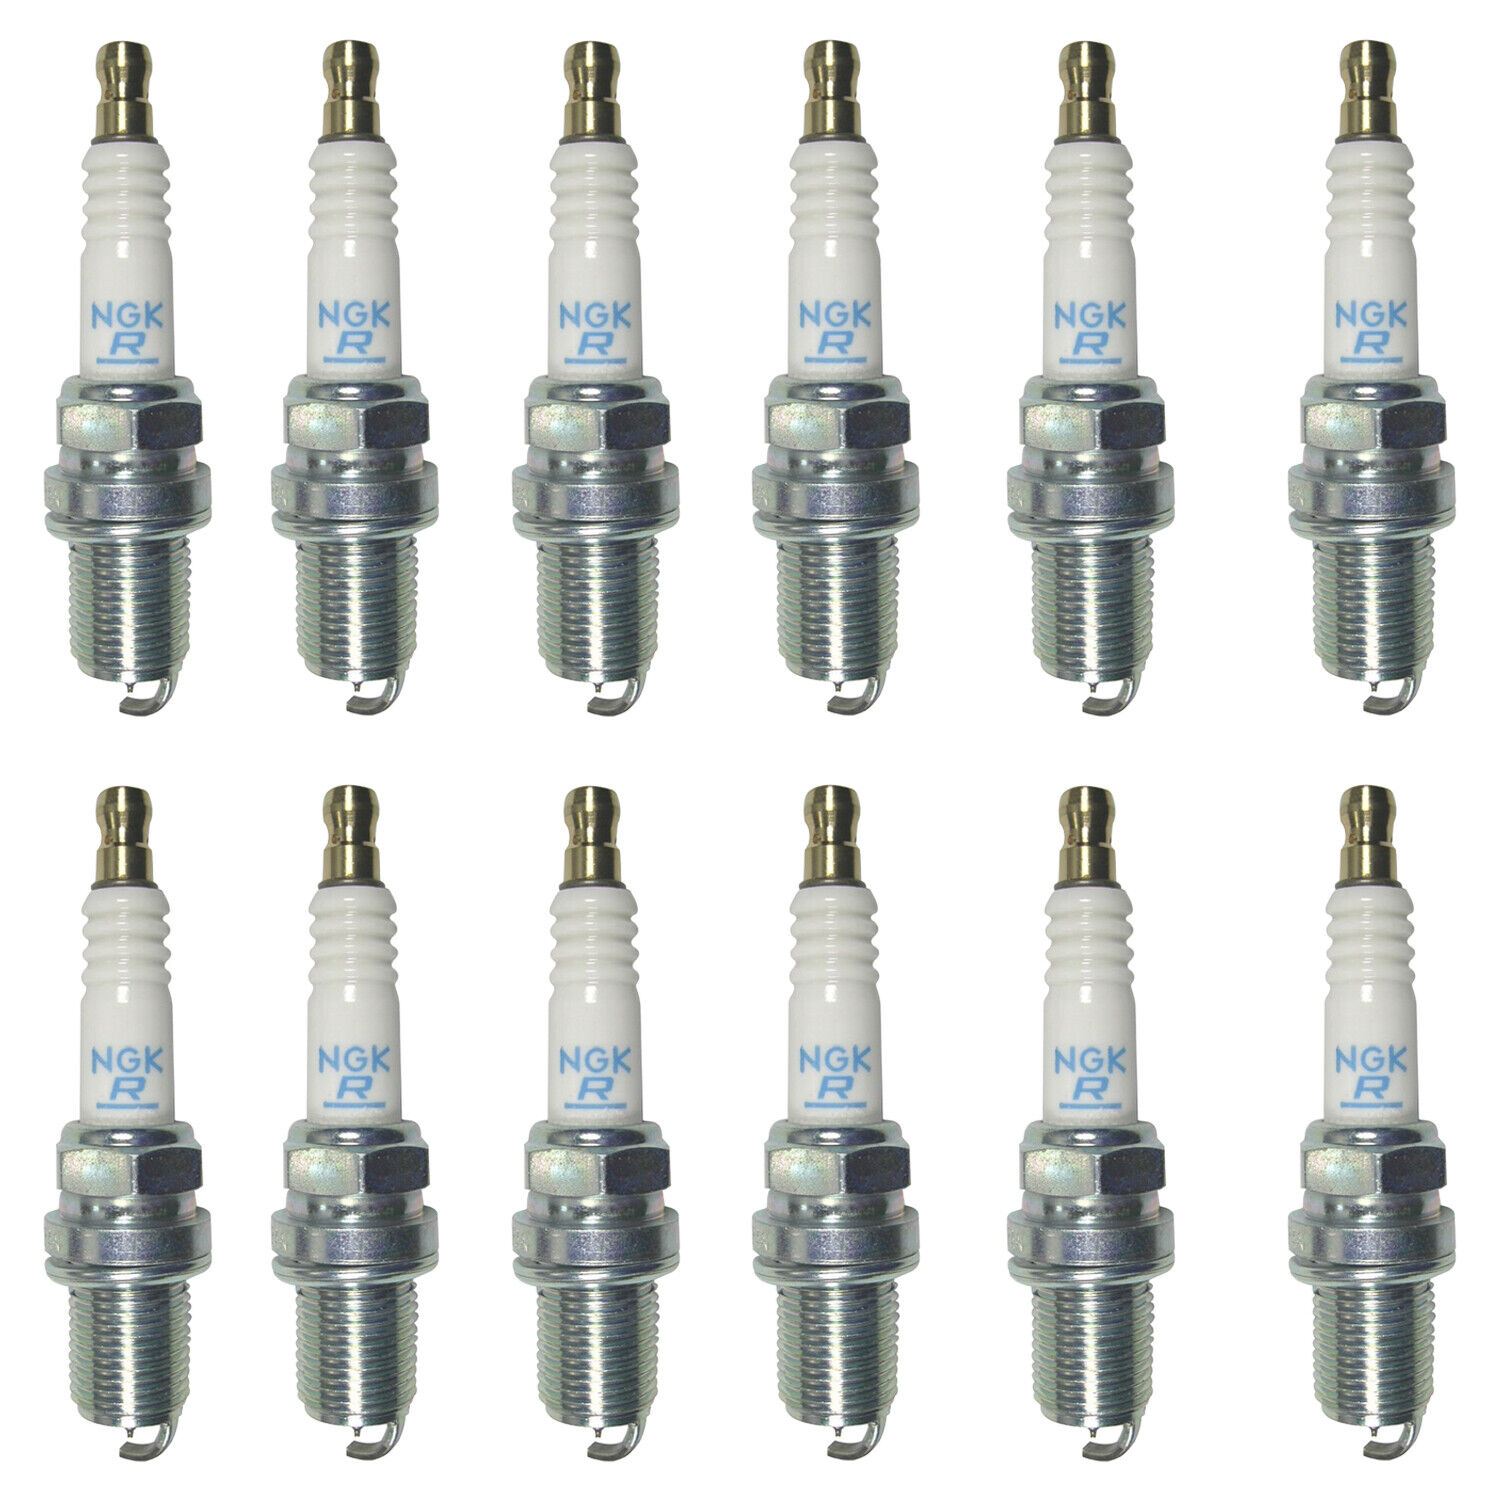 NGK Laser Platinum Spark Plug Set 12 Pieces 4292 For W203 W202 W210 C240 V6